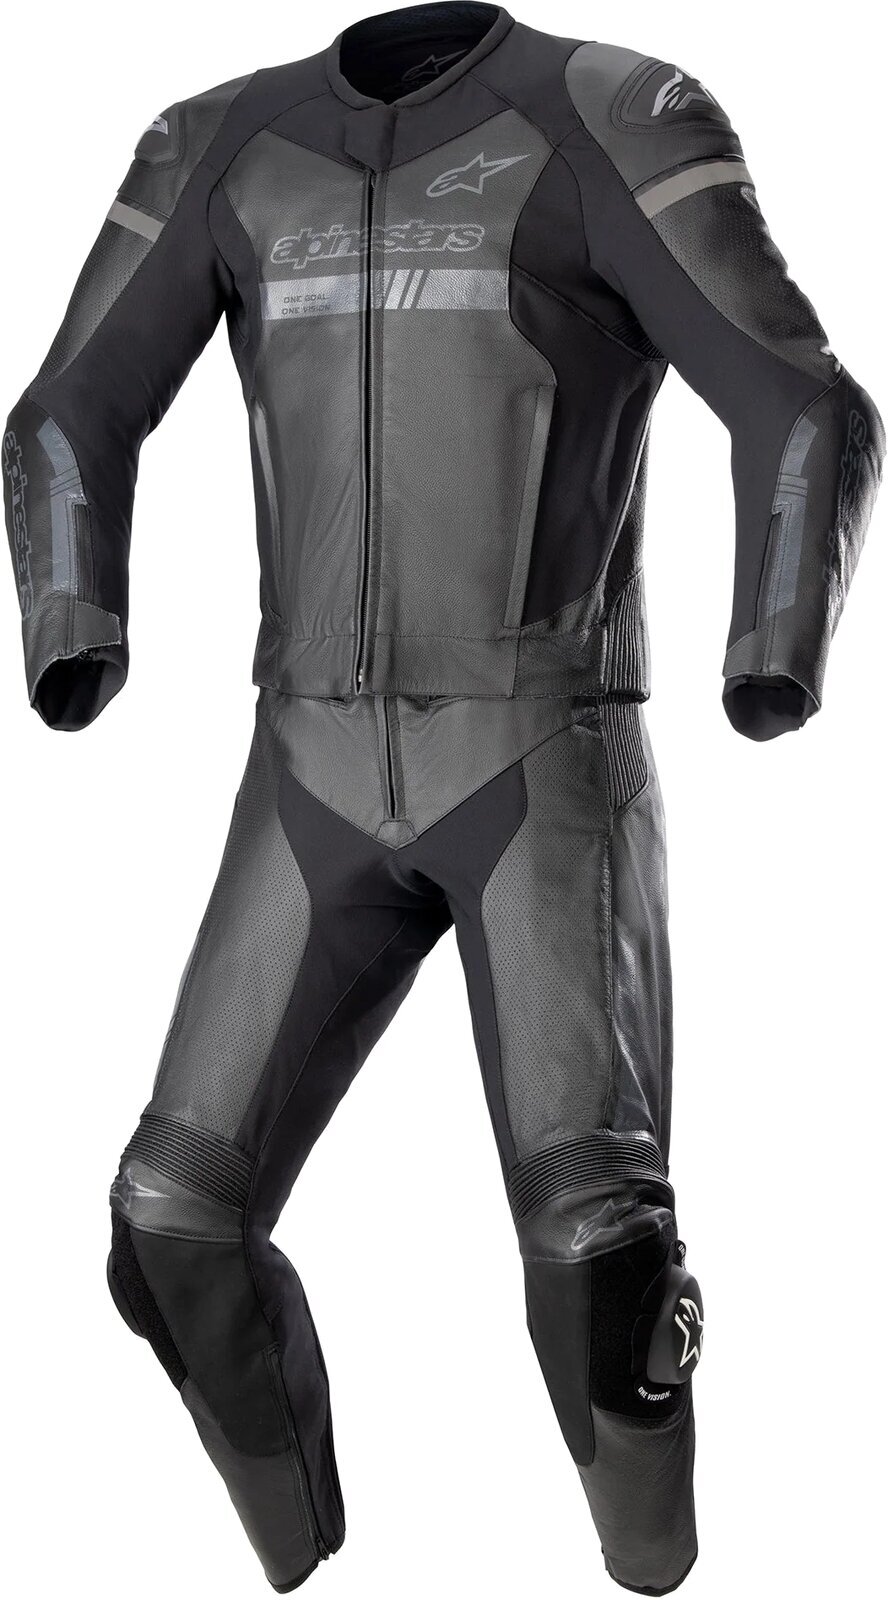 Μότο κοστούμι δύο τεμαχίων Alpinestars GP Force Chaser Leather Suit 2 Pc Black/Black 56 Μότο κοστούμι δύο τεμαχίων